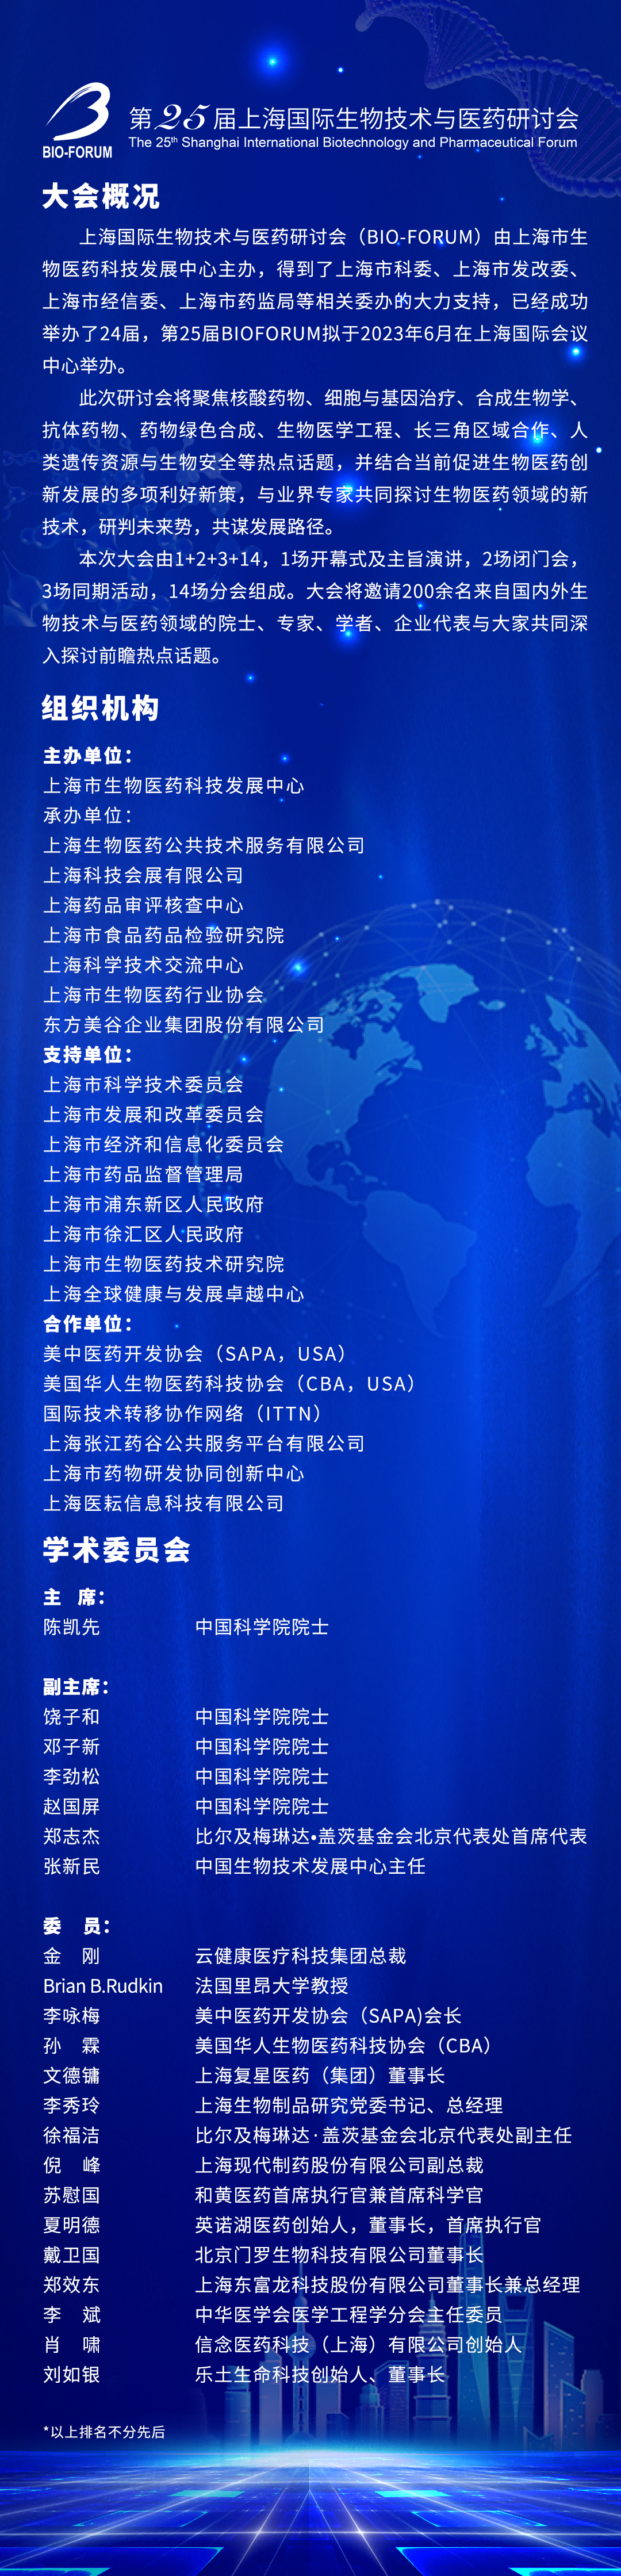 第25屆上海國際生物技術與醫藥研討會